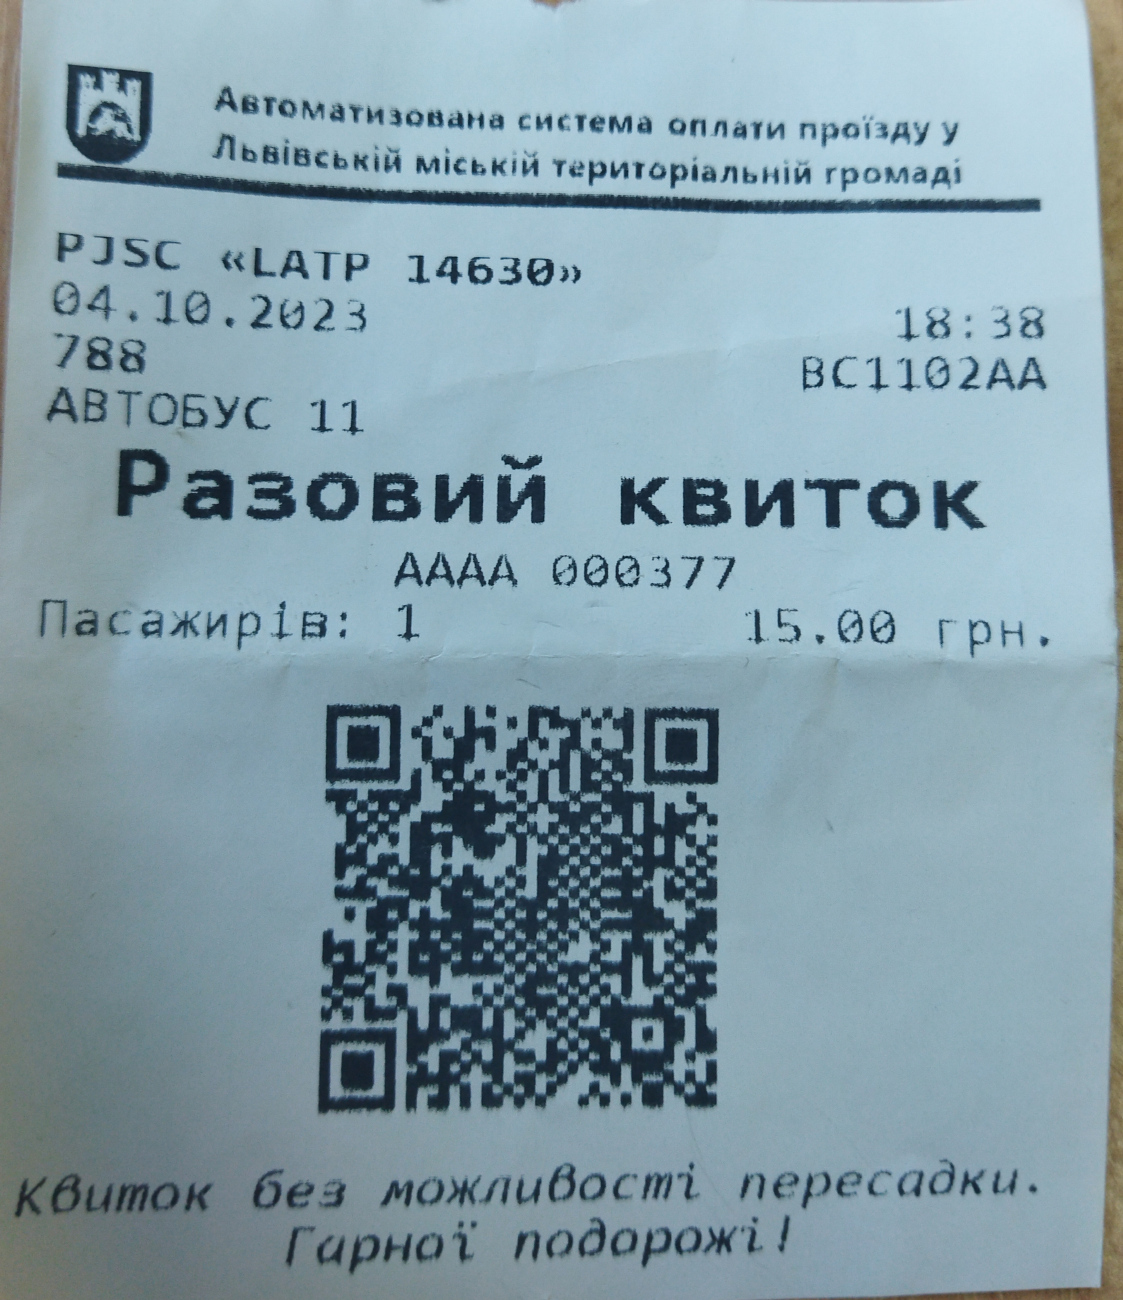 Lviv — Tickets; Tickets (all)